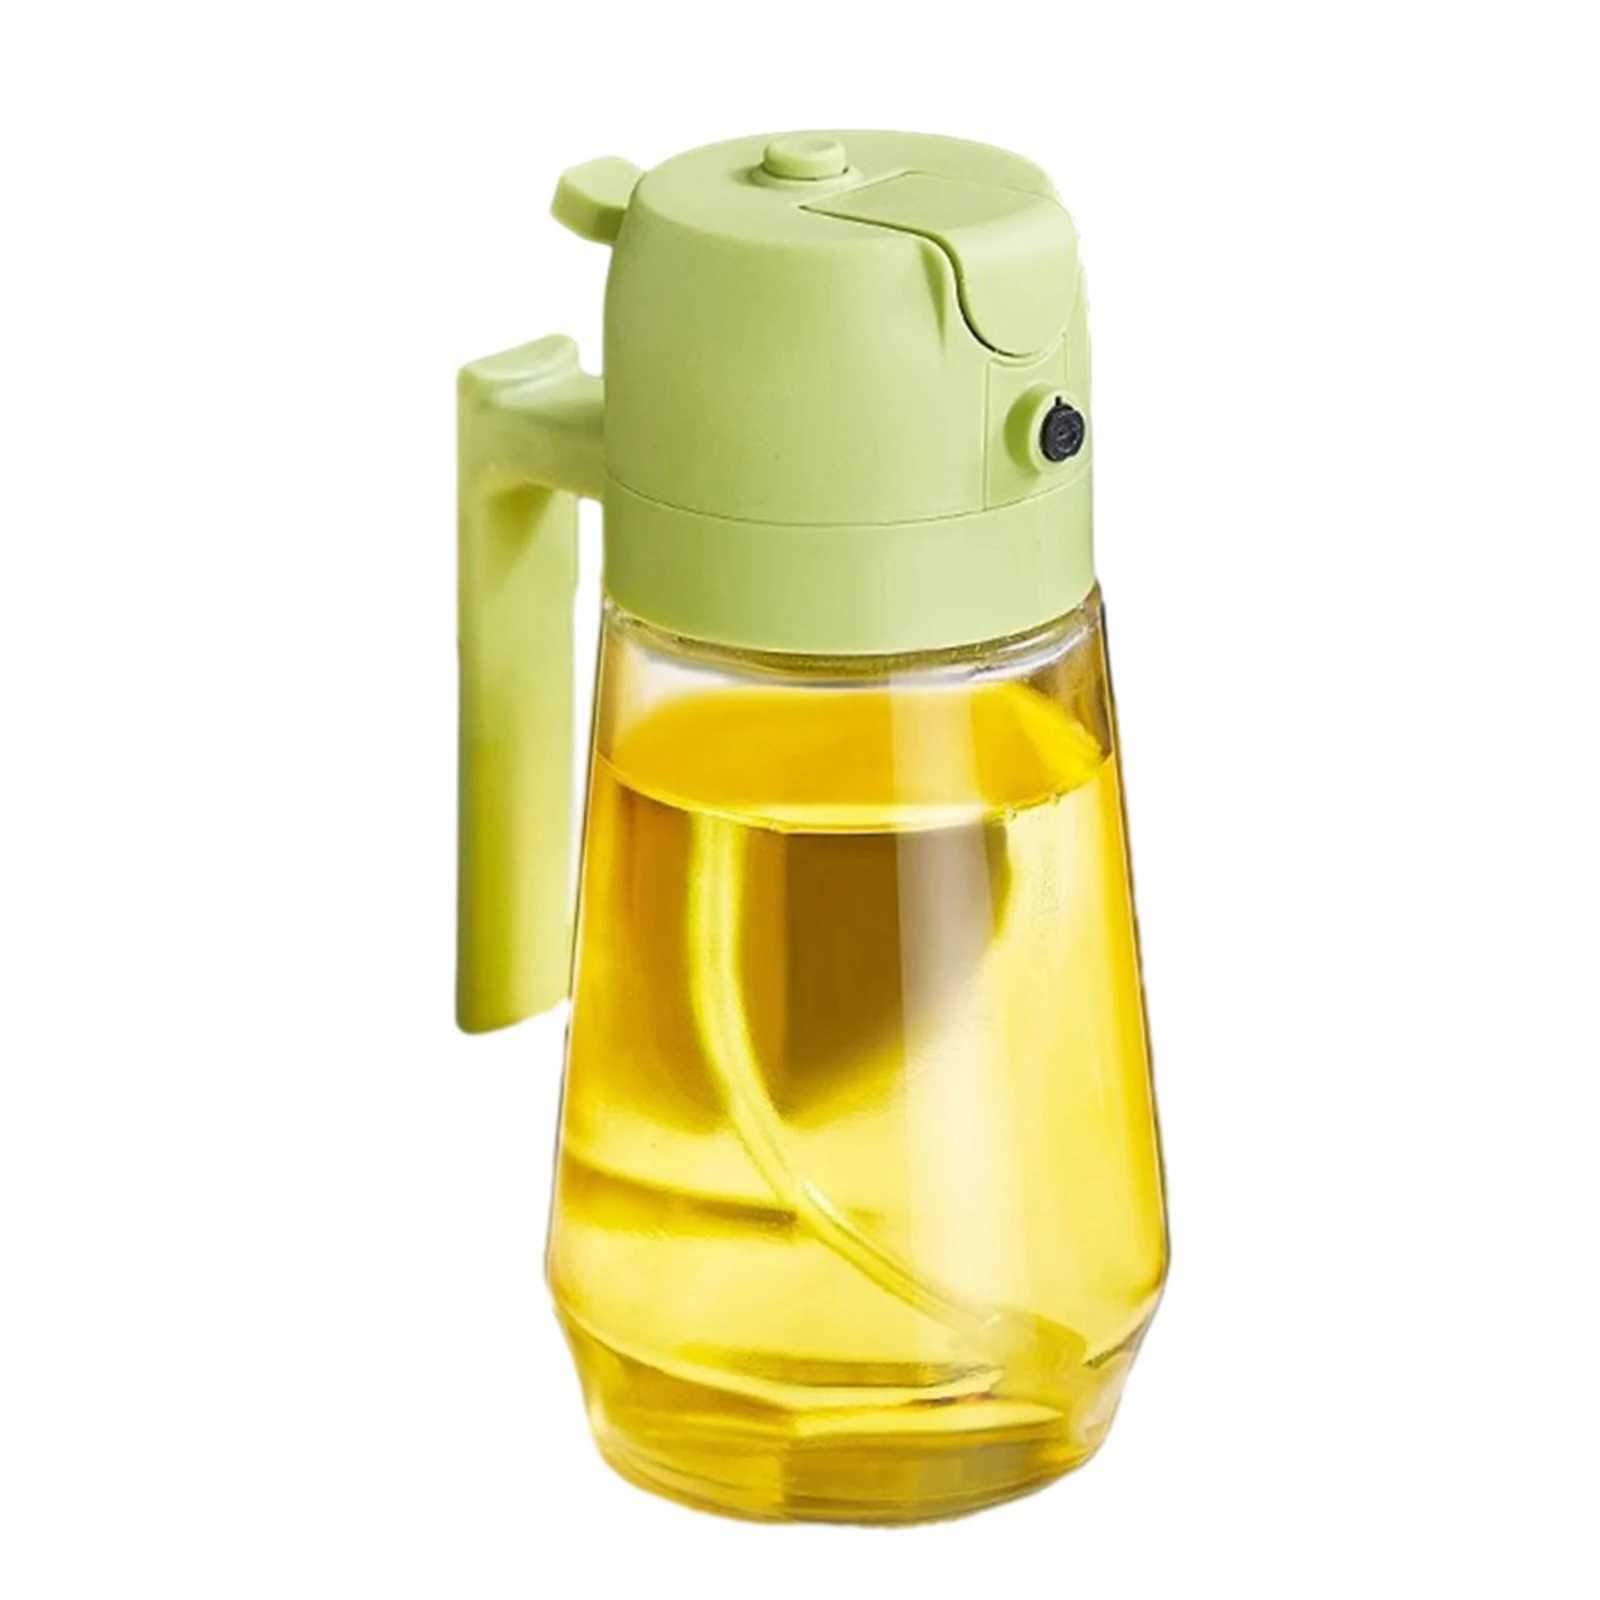 Andere Küche Essbar Küche Olivenölverteiler Ölsprayflasche Automatischer Händler 470ml Ölspray zum Kochen Küchensalat Barbecue YQ2400408